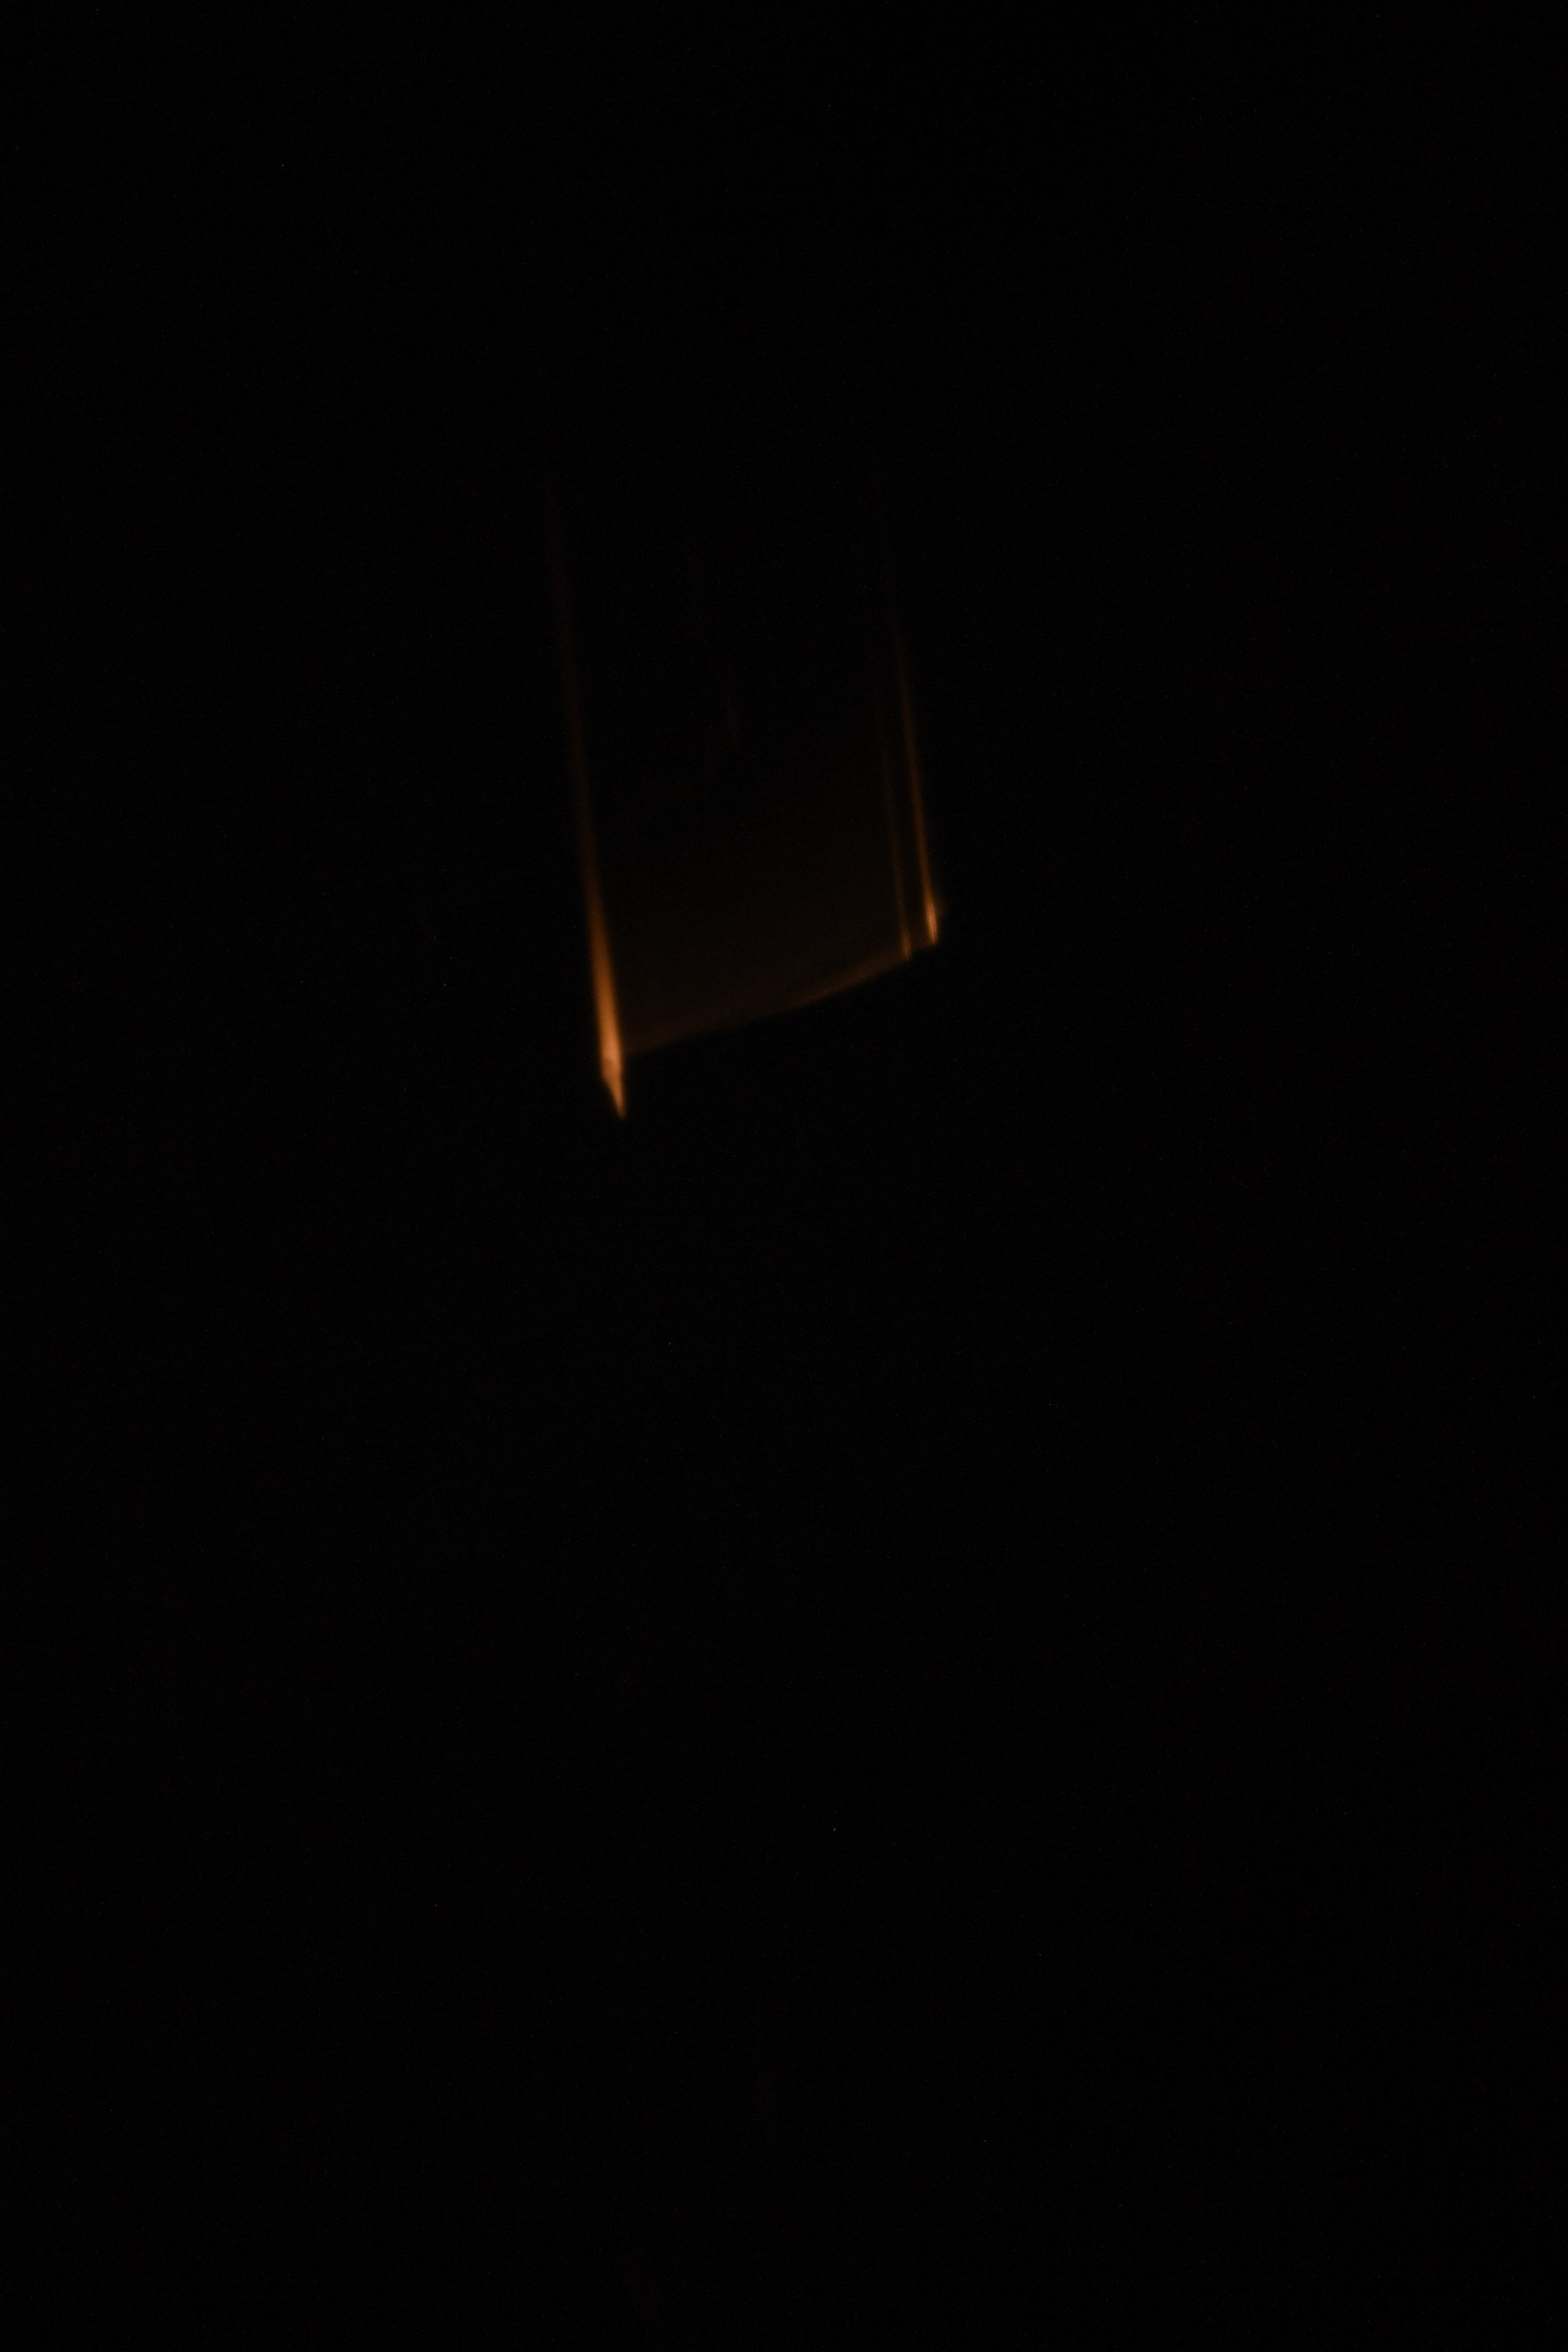 Se pueden ver brillantes estelas de fuego en la oscuridad del espacio.